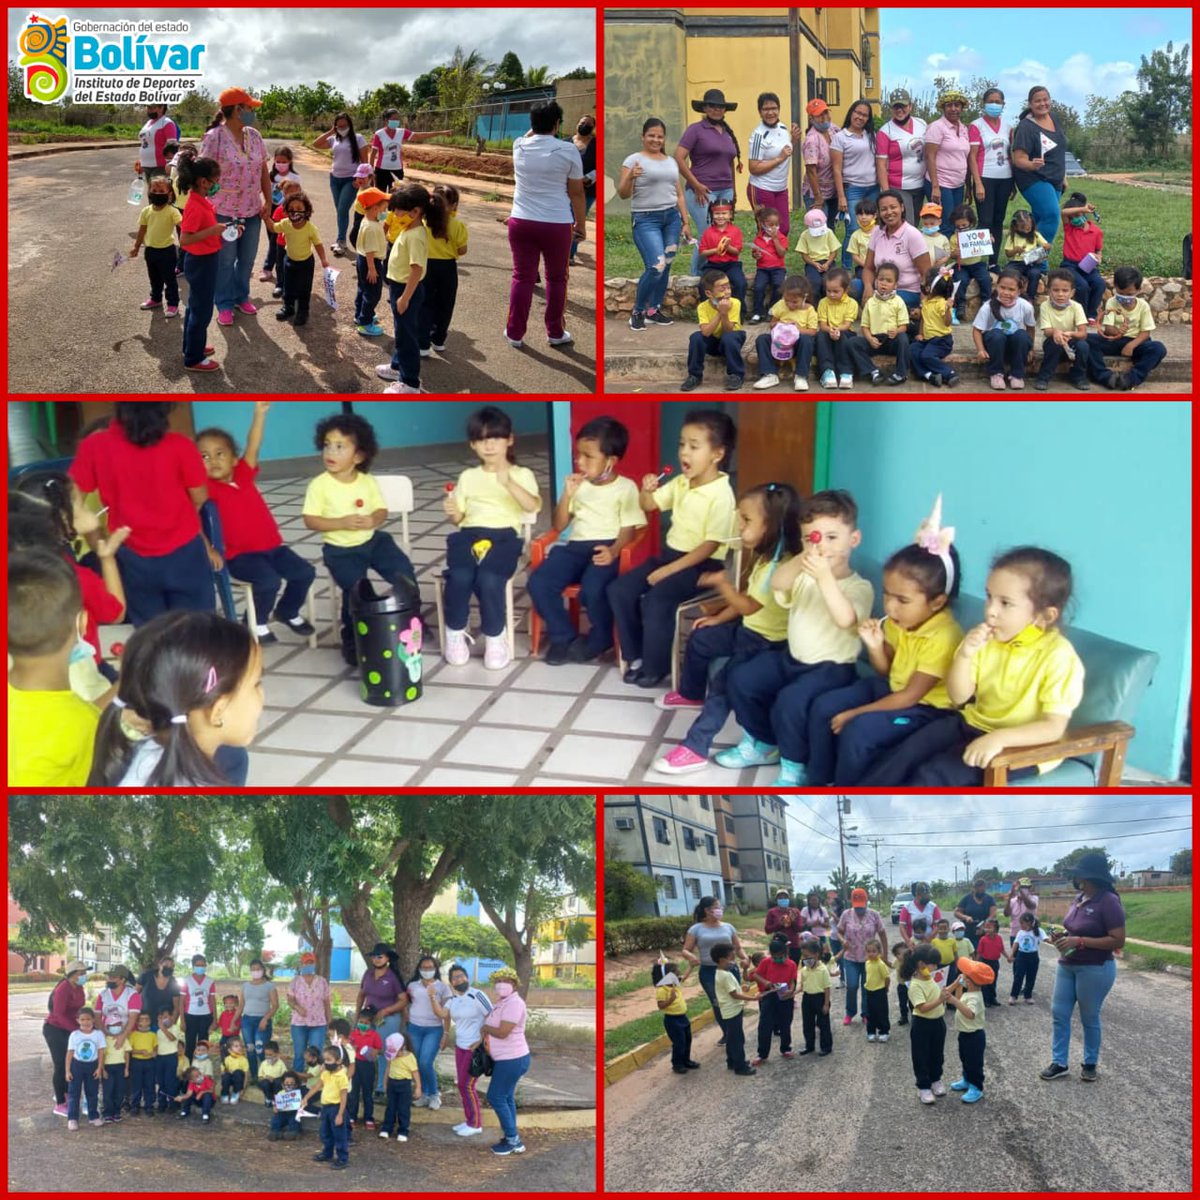 #Regional | El equipo de @Idebol continúa con su programa 'Idebol va a la escuela' y es así que desde el CEI Lomas de Angostura realizaron distintas actividades deportivas a 25 niños y sus representantes #YoCreoEnVenezuela #18Mar